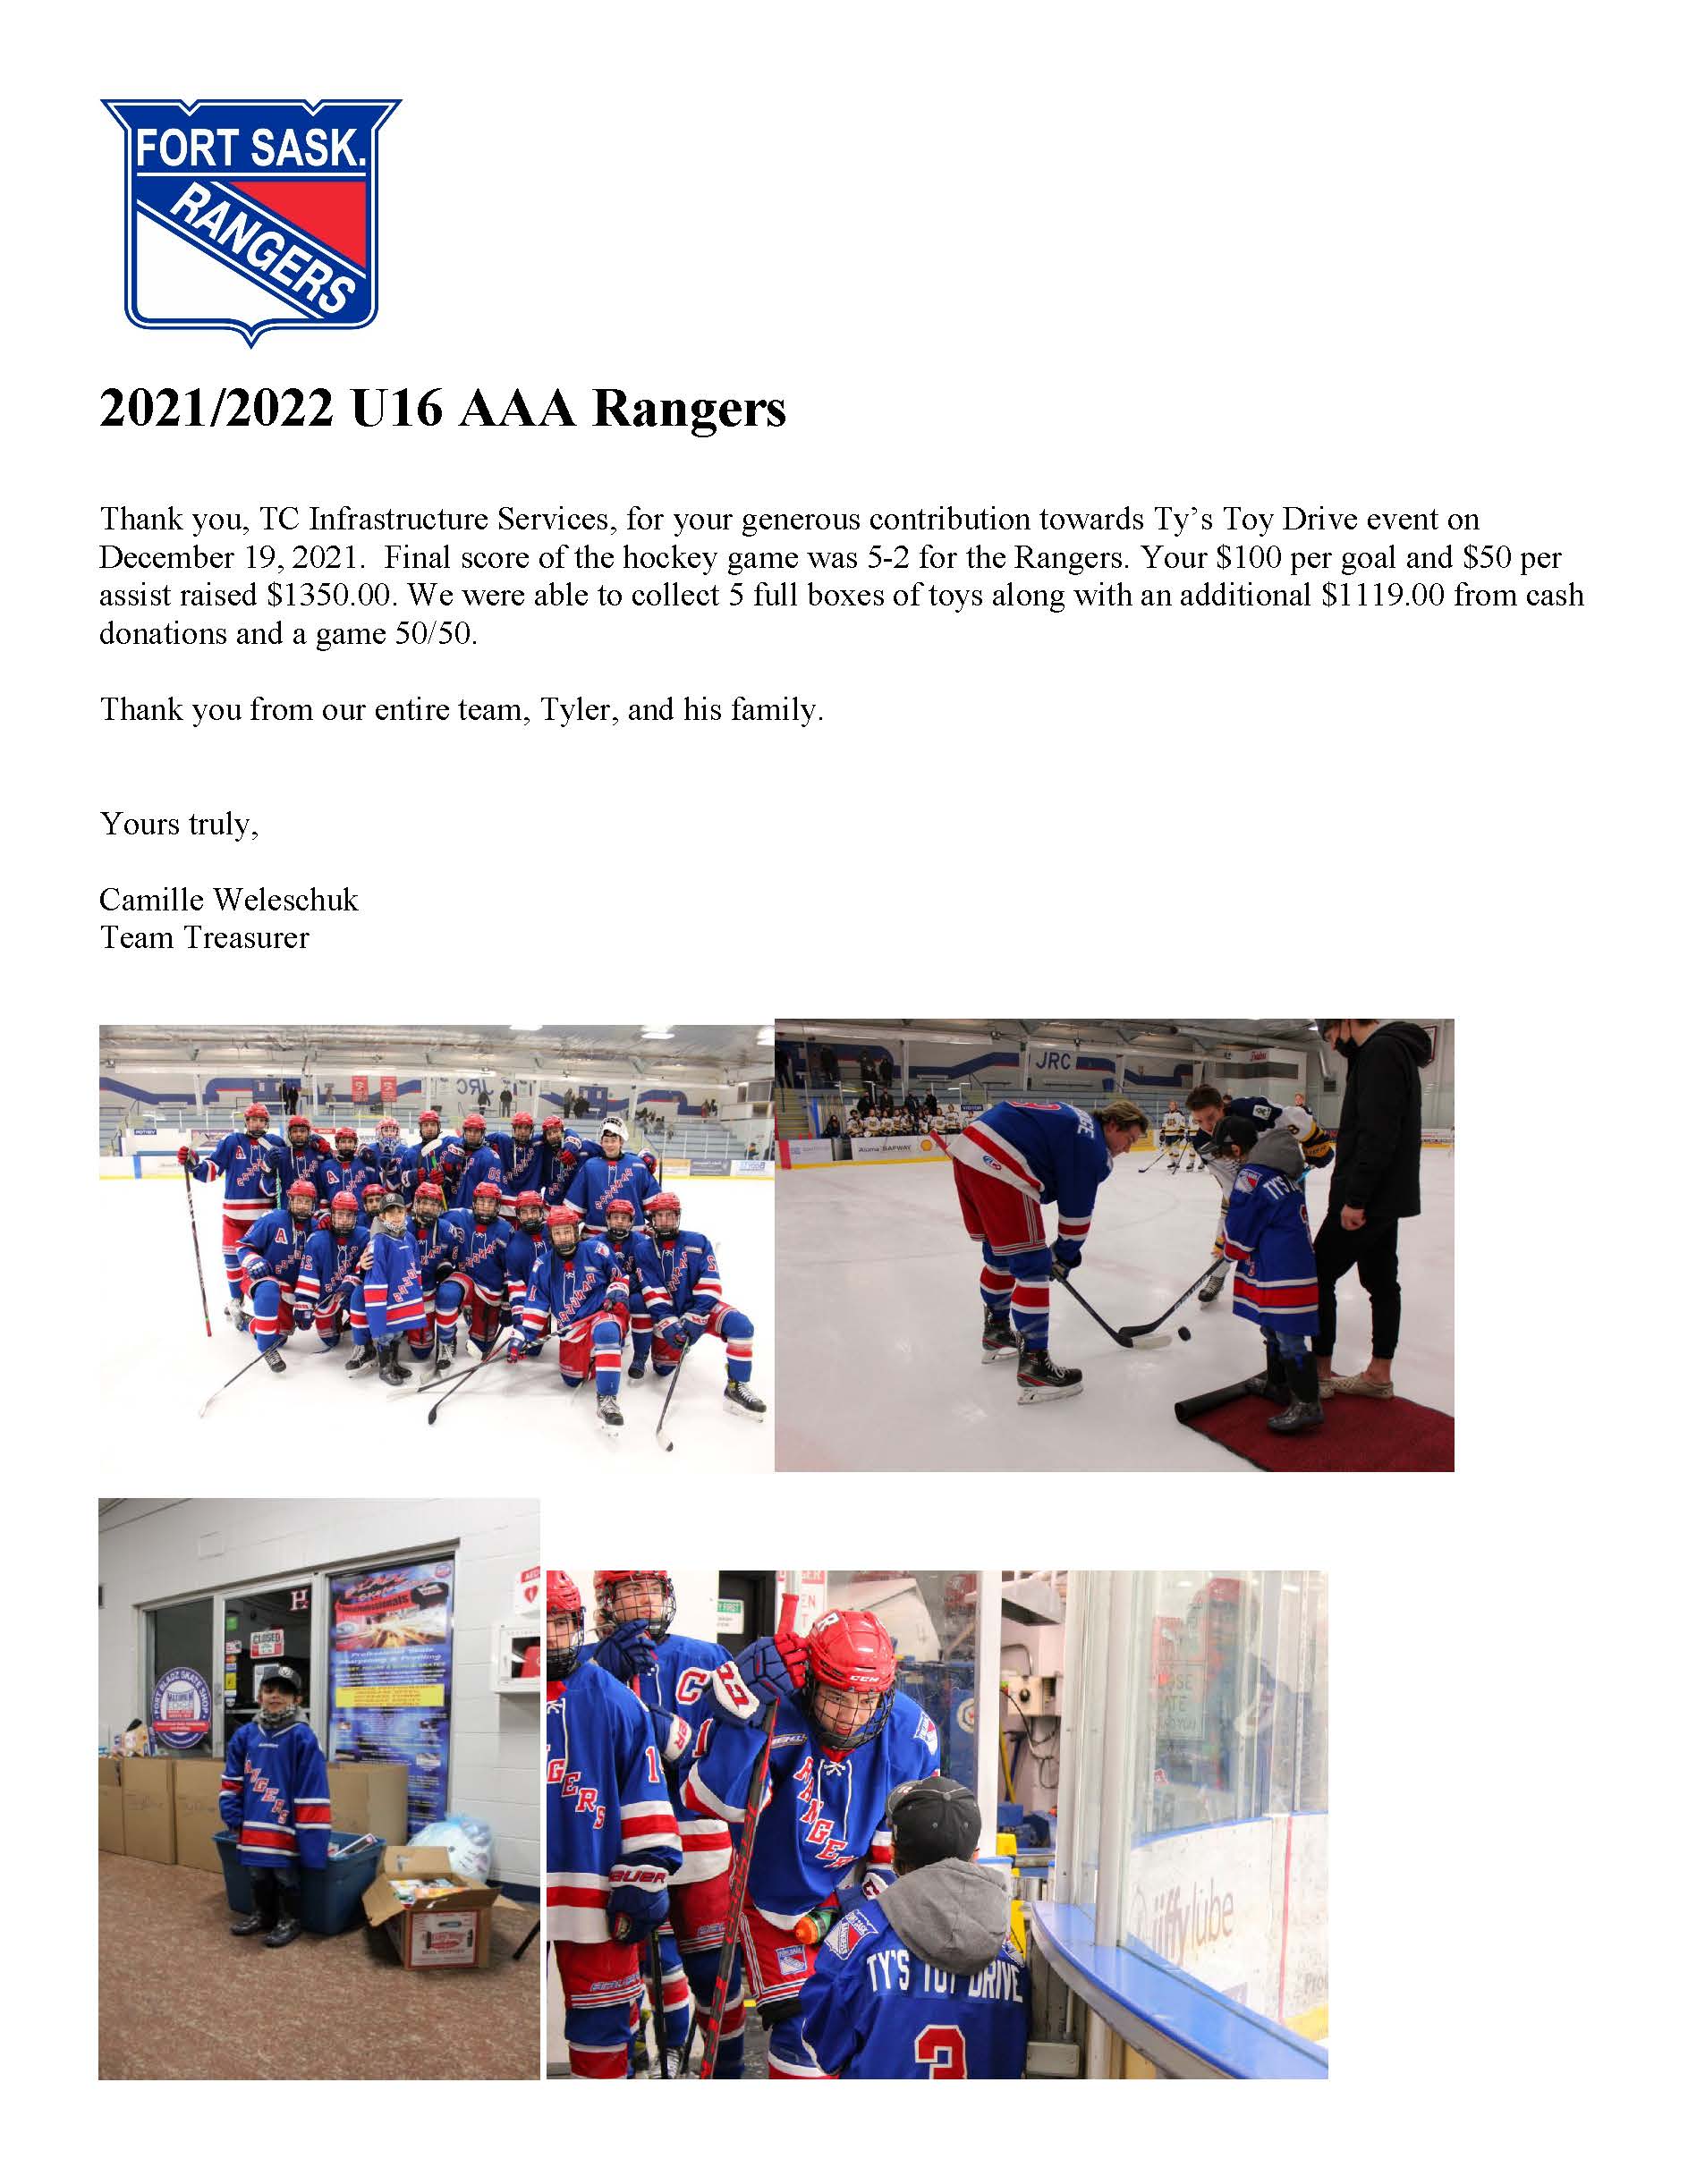 U16 AAA Rangers Toy Drive 2021